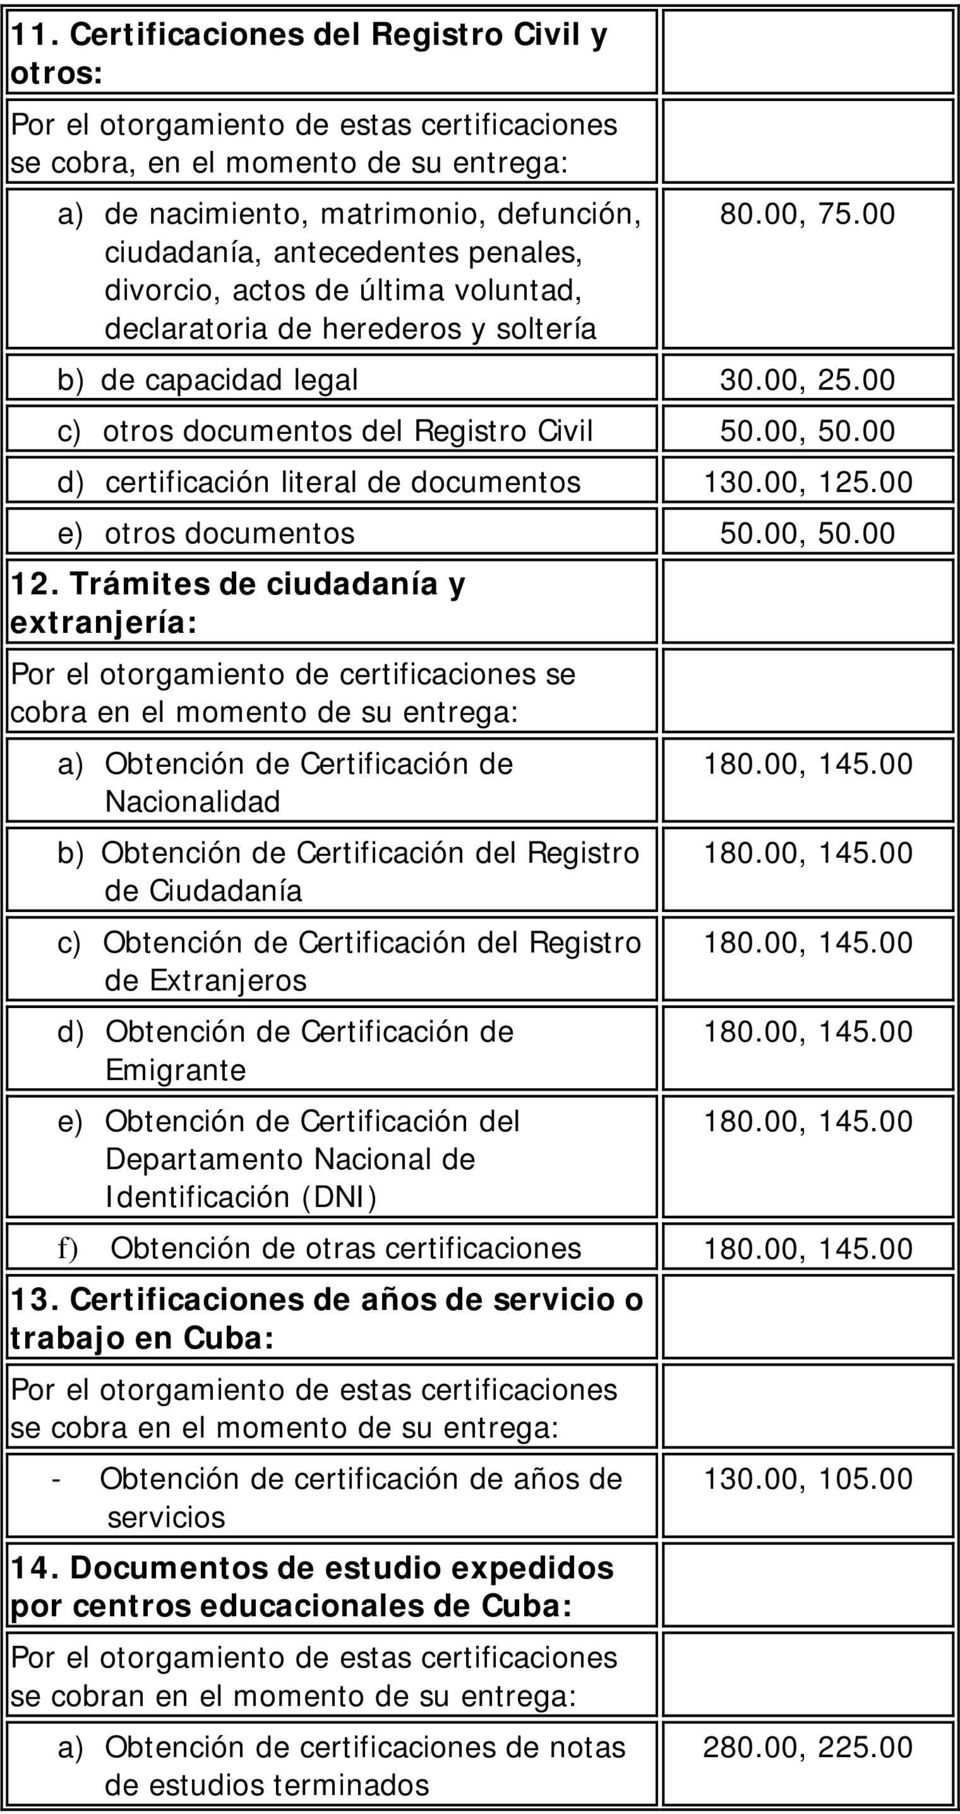 00 d) certificación literal de documentos 130.00, 125.00 e) otros documentos 50.00, 50.00 12.